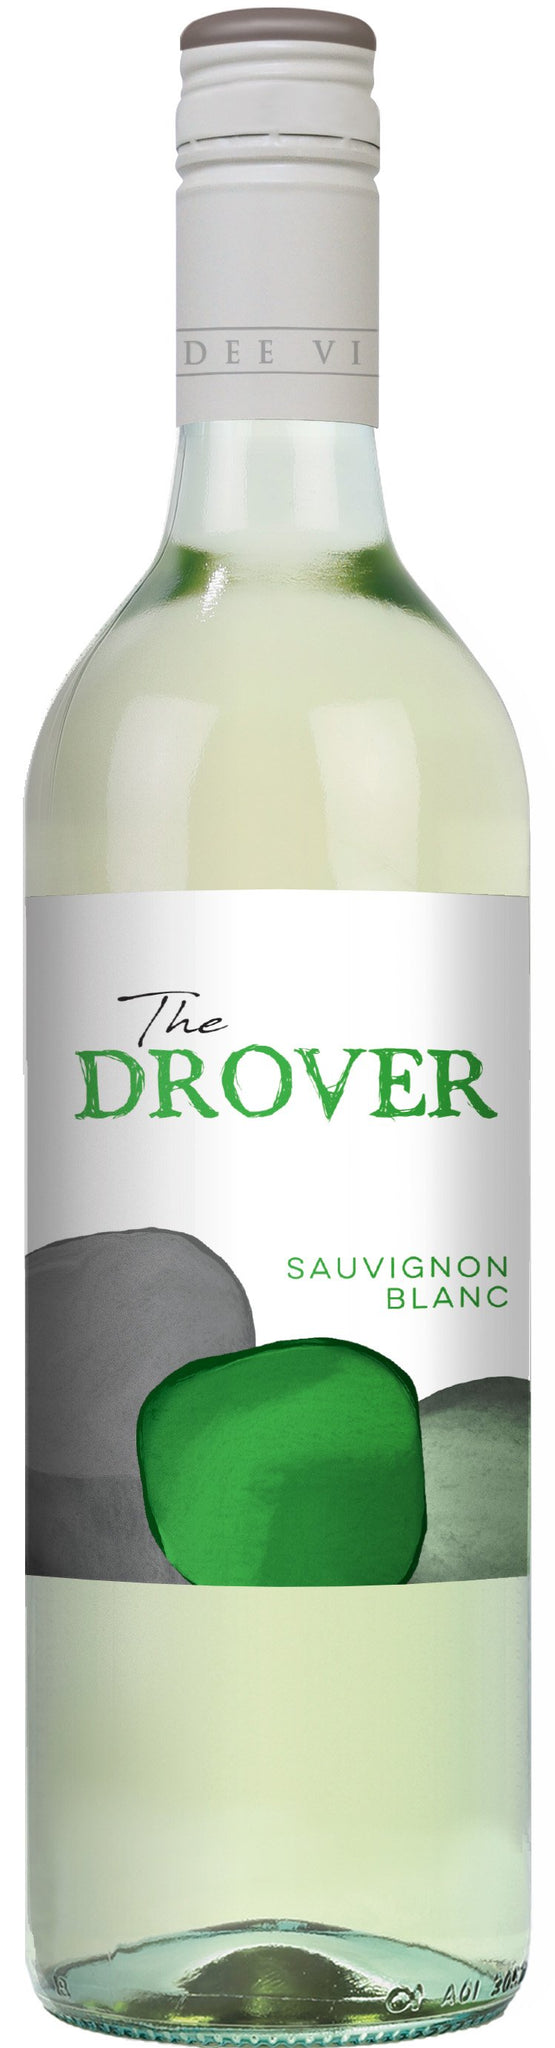 The Drover Sauv Blanc 750ml